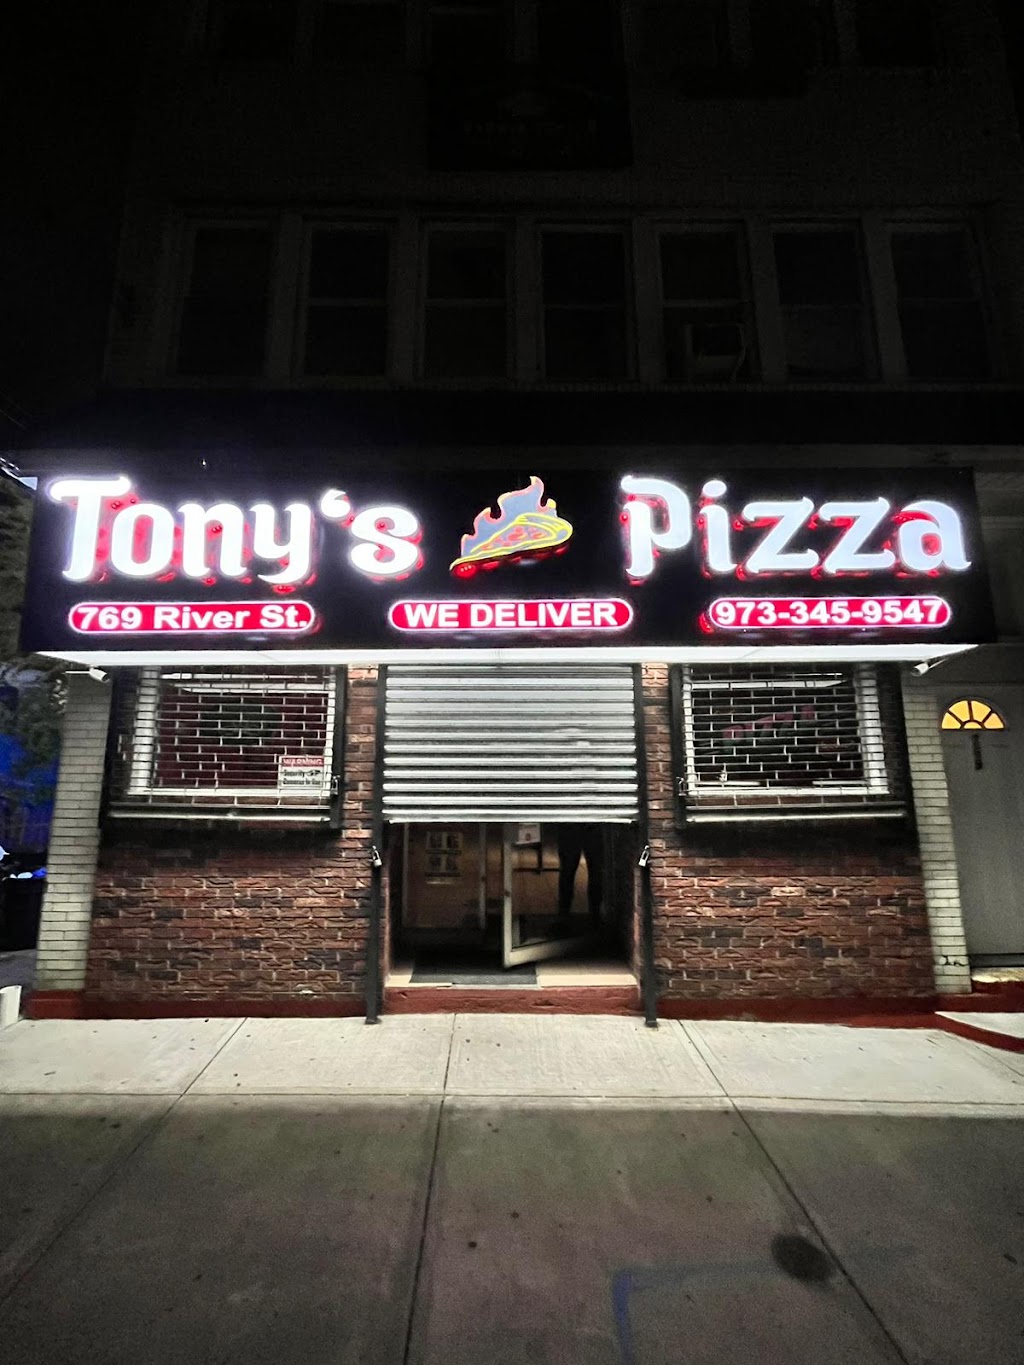 Tonys Pizza | 769 River St, Paterson, NJ 07524 | Phone: (973) 345-9547